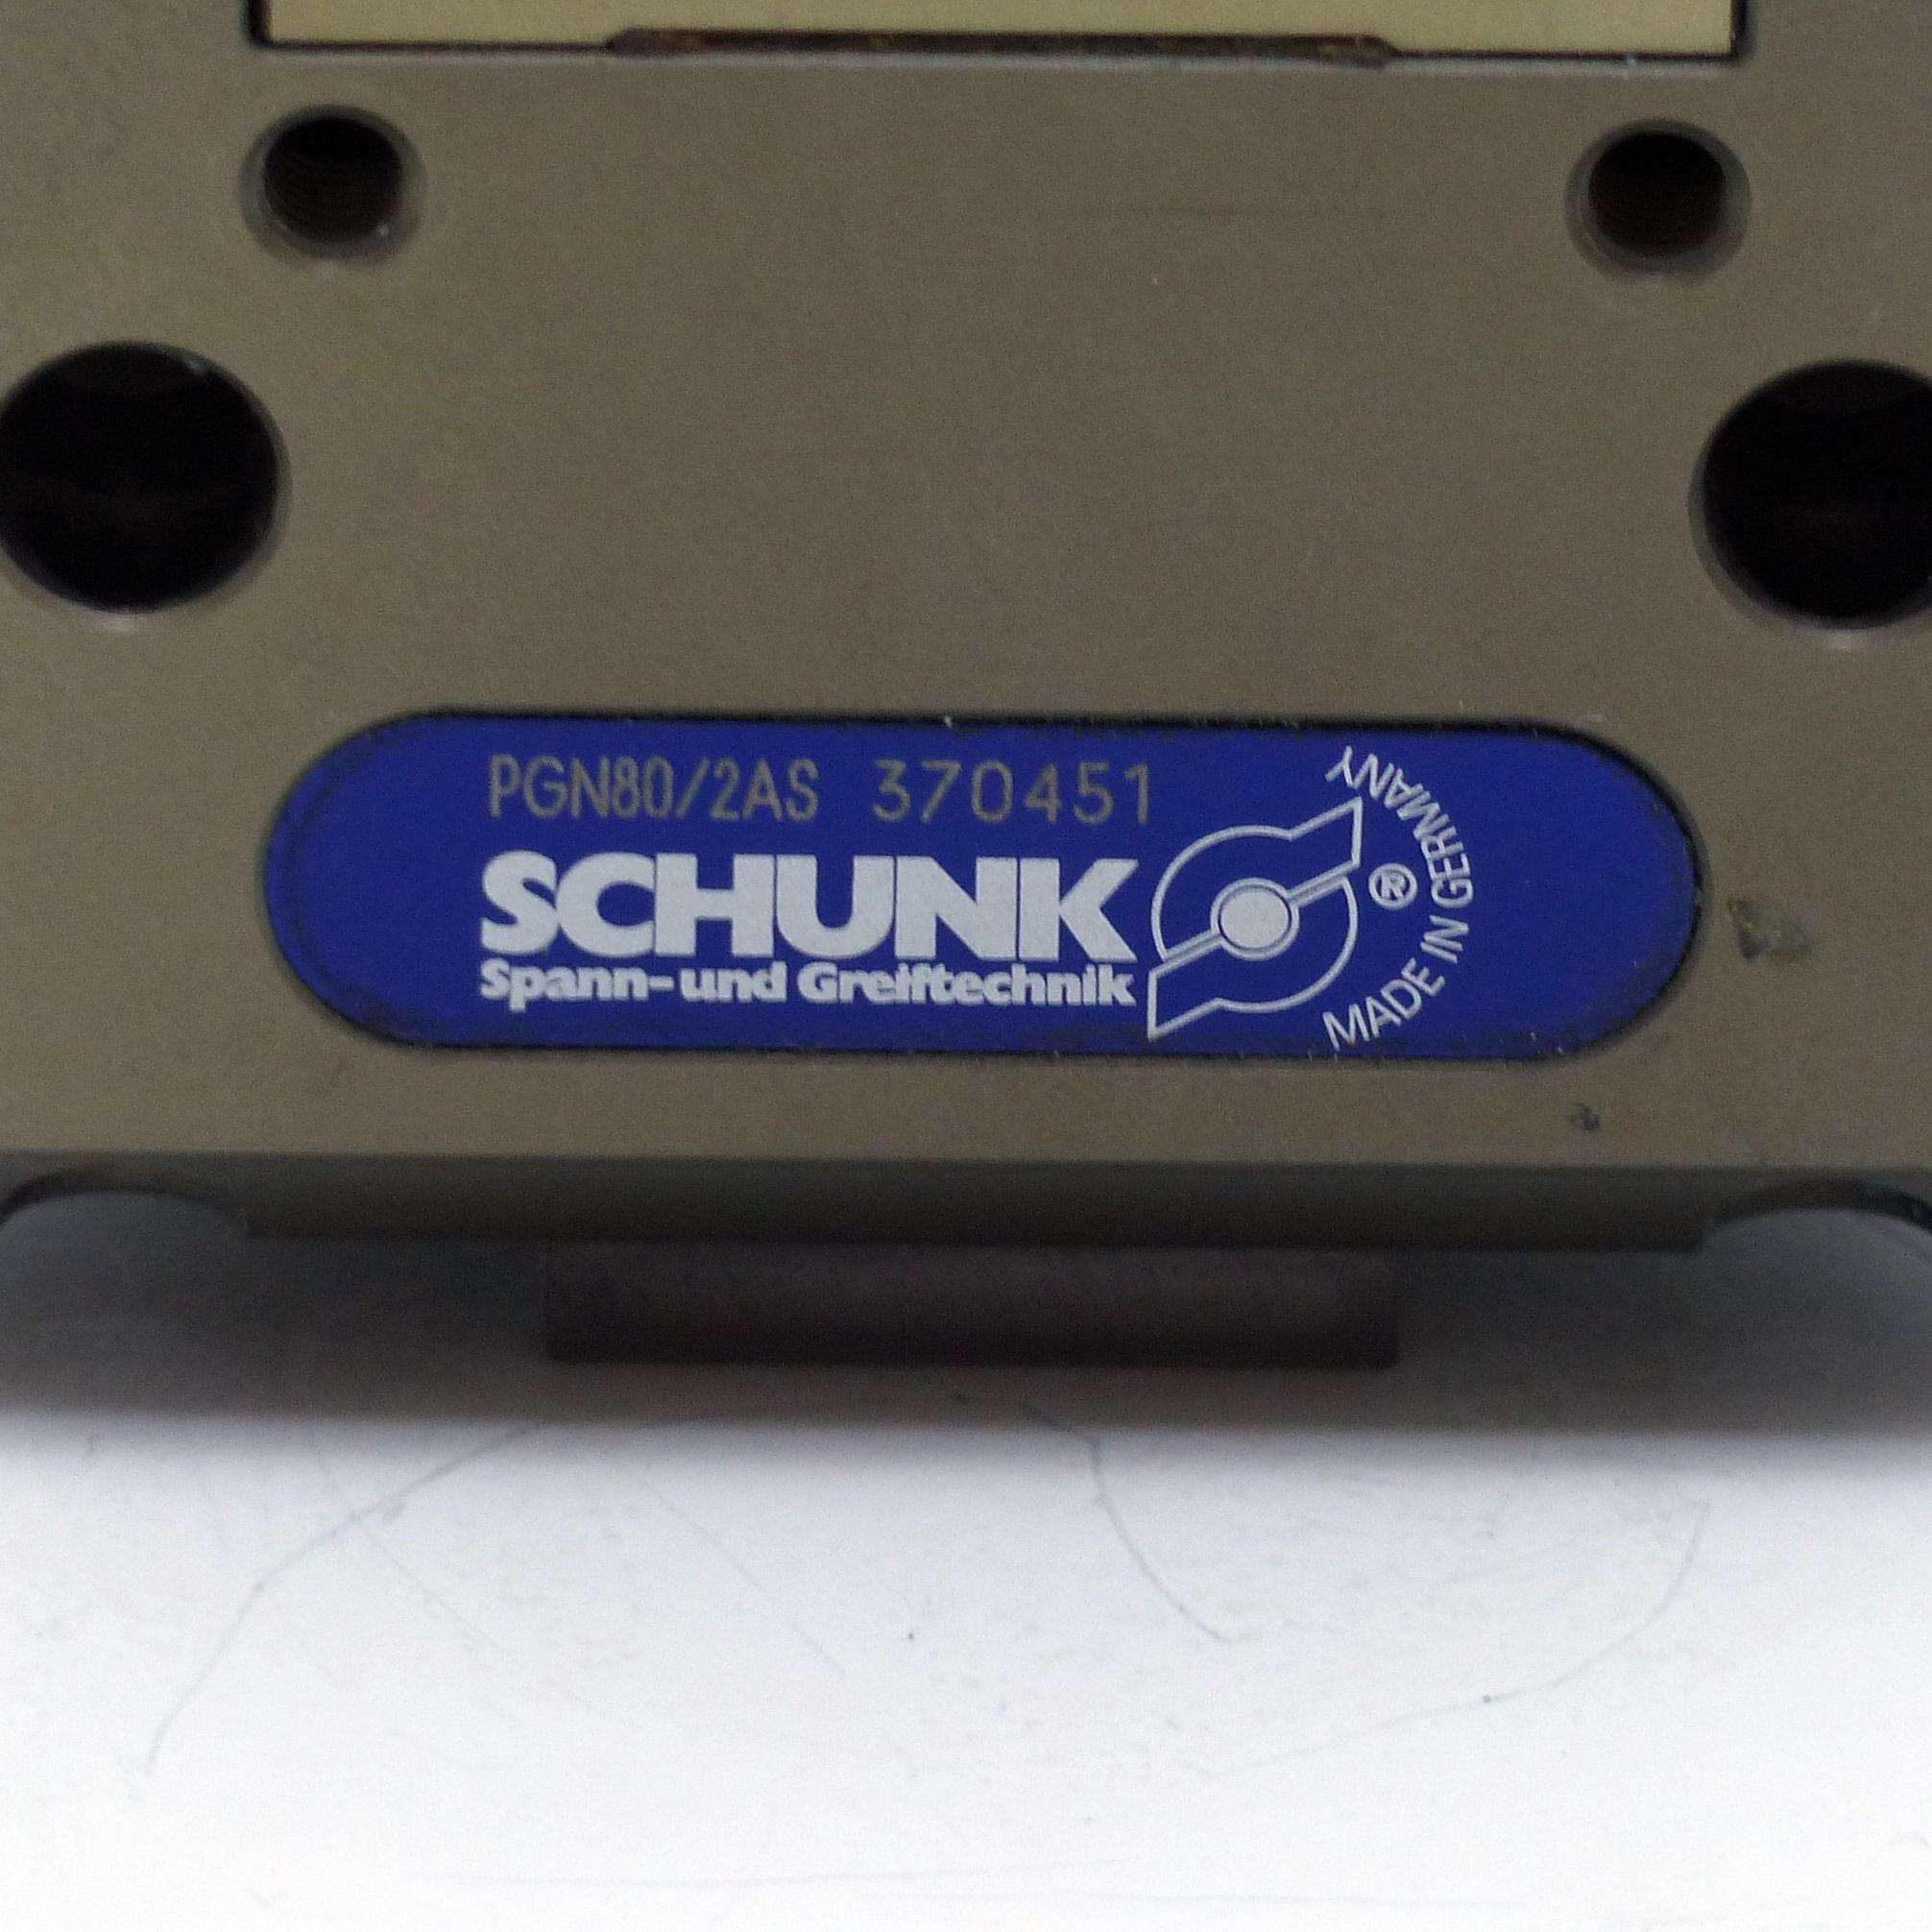 Produktfoto 2 von SCHUNK Parallelgreifer PGN80/2AS